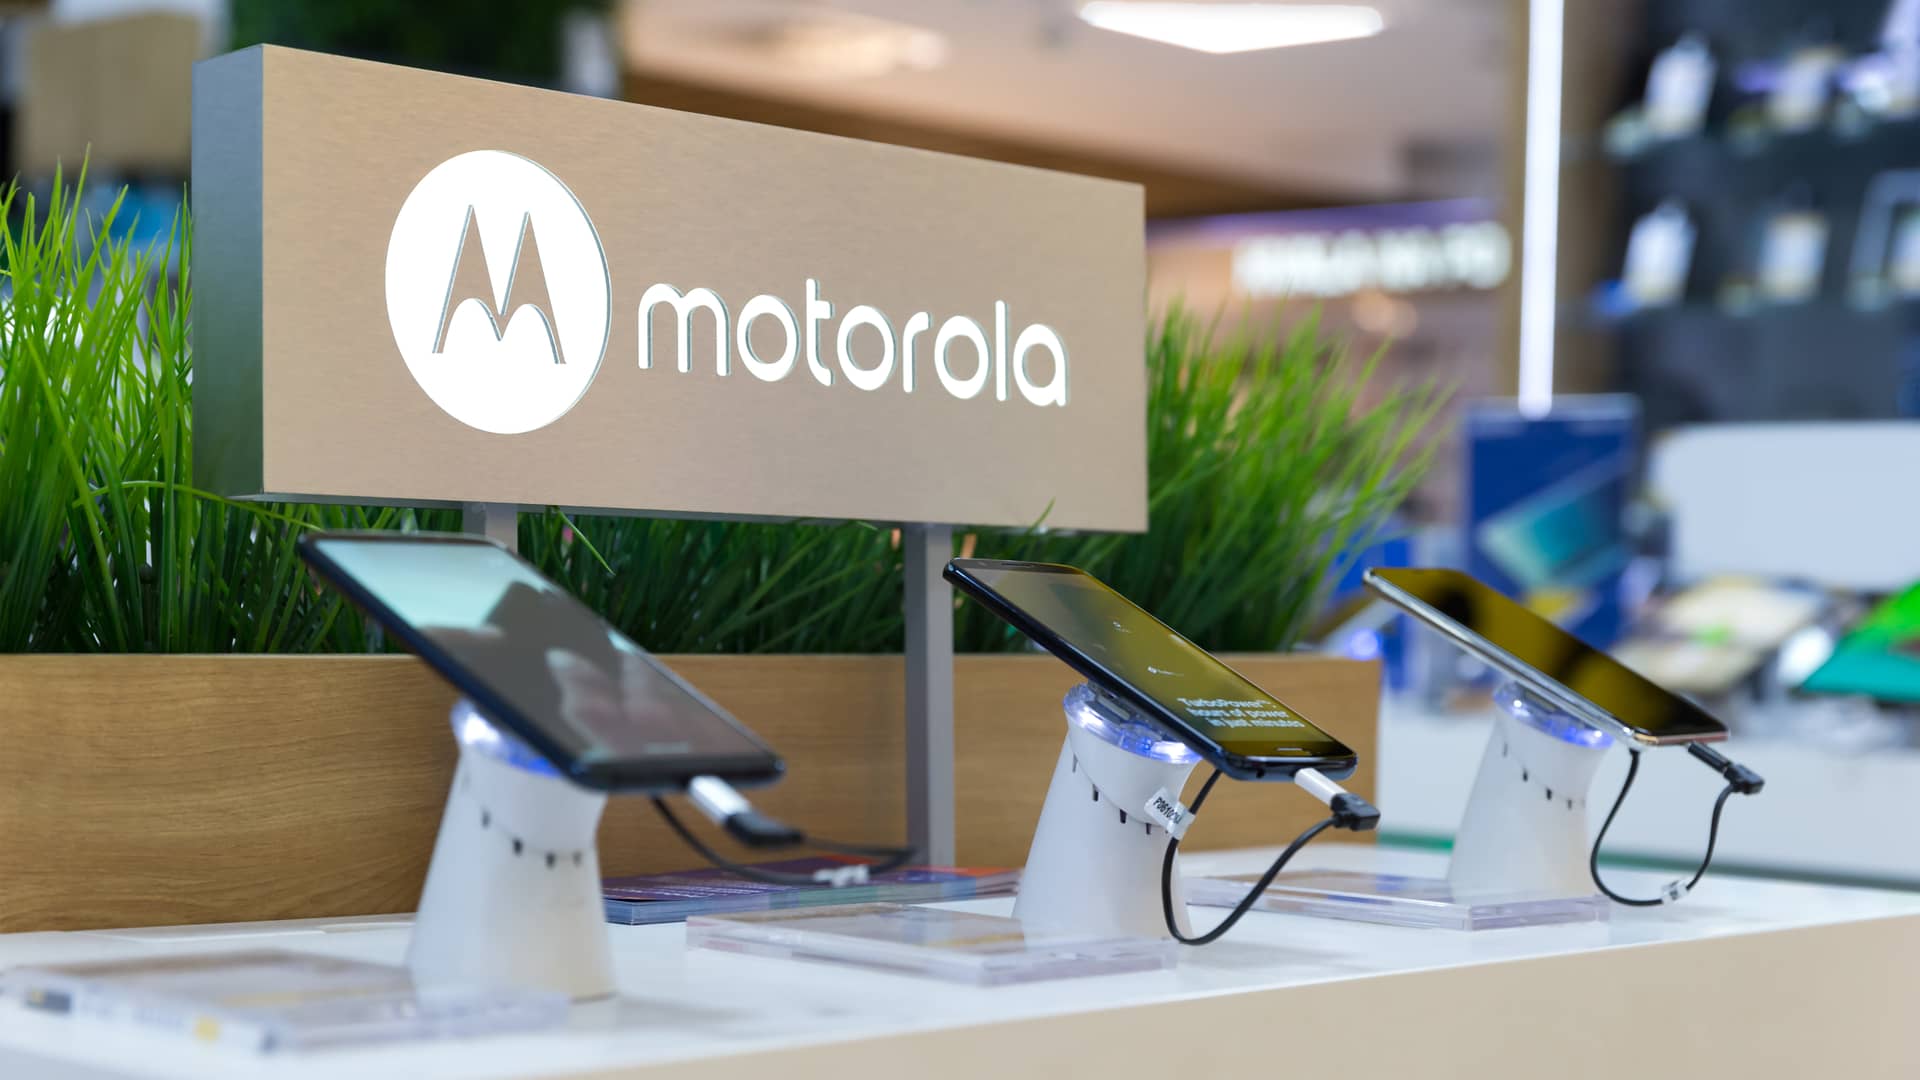 Celulares Motorola: Precios, modelos y planes | Noviembre 2022